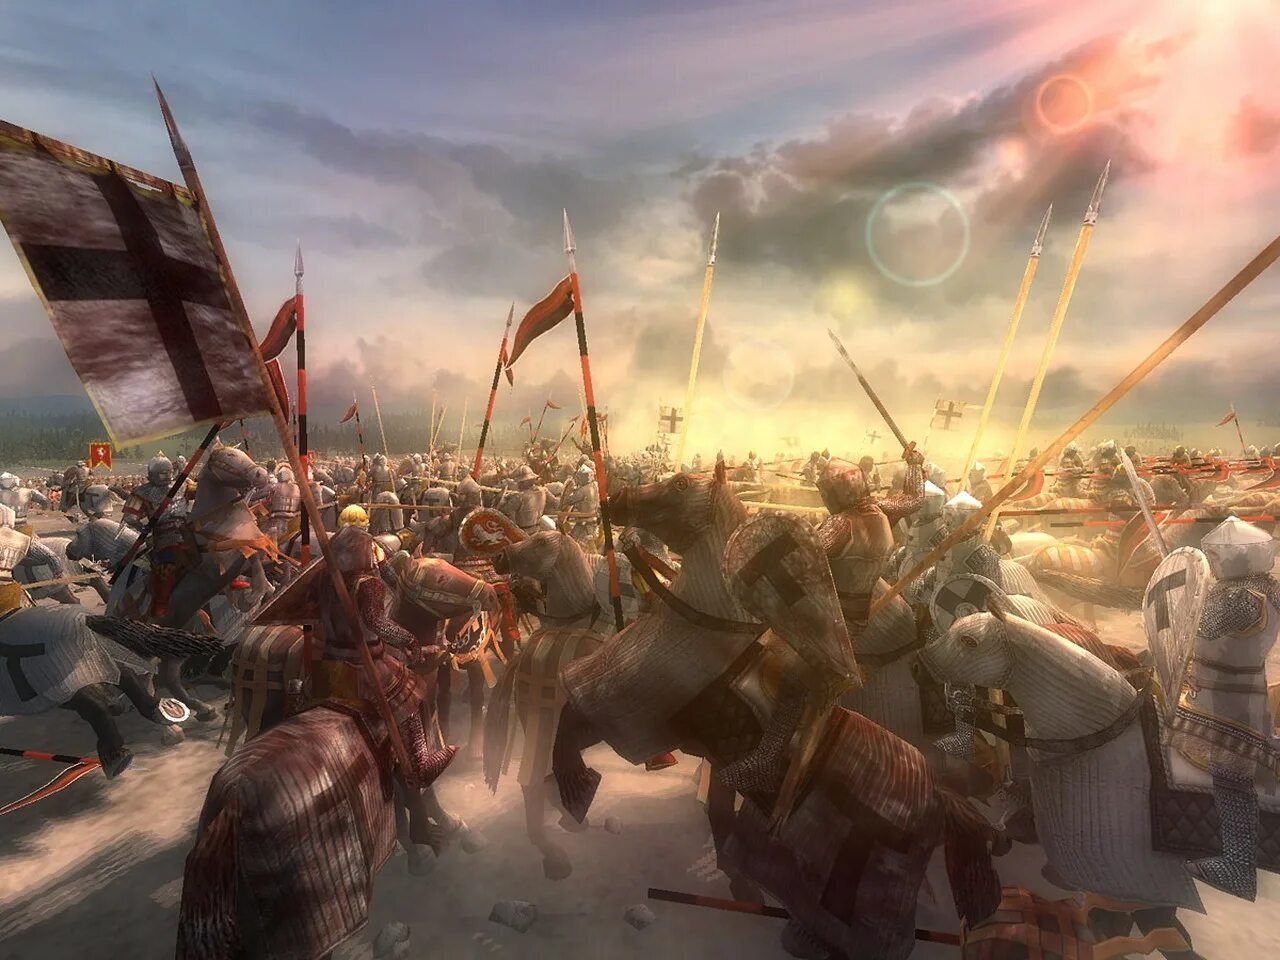 Ледовое побоище начало битвы. Битва Ледовое побоище 1242.